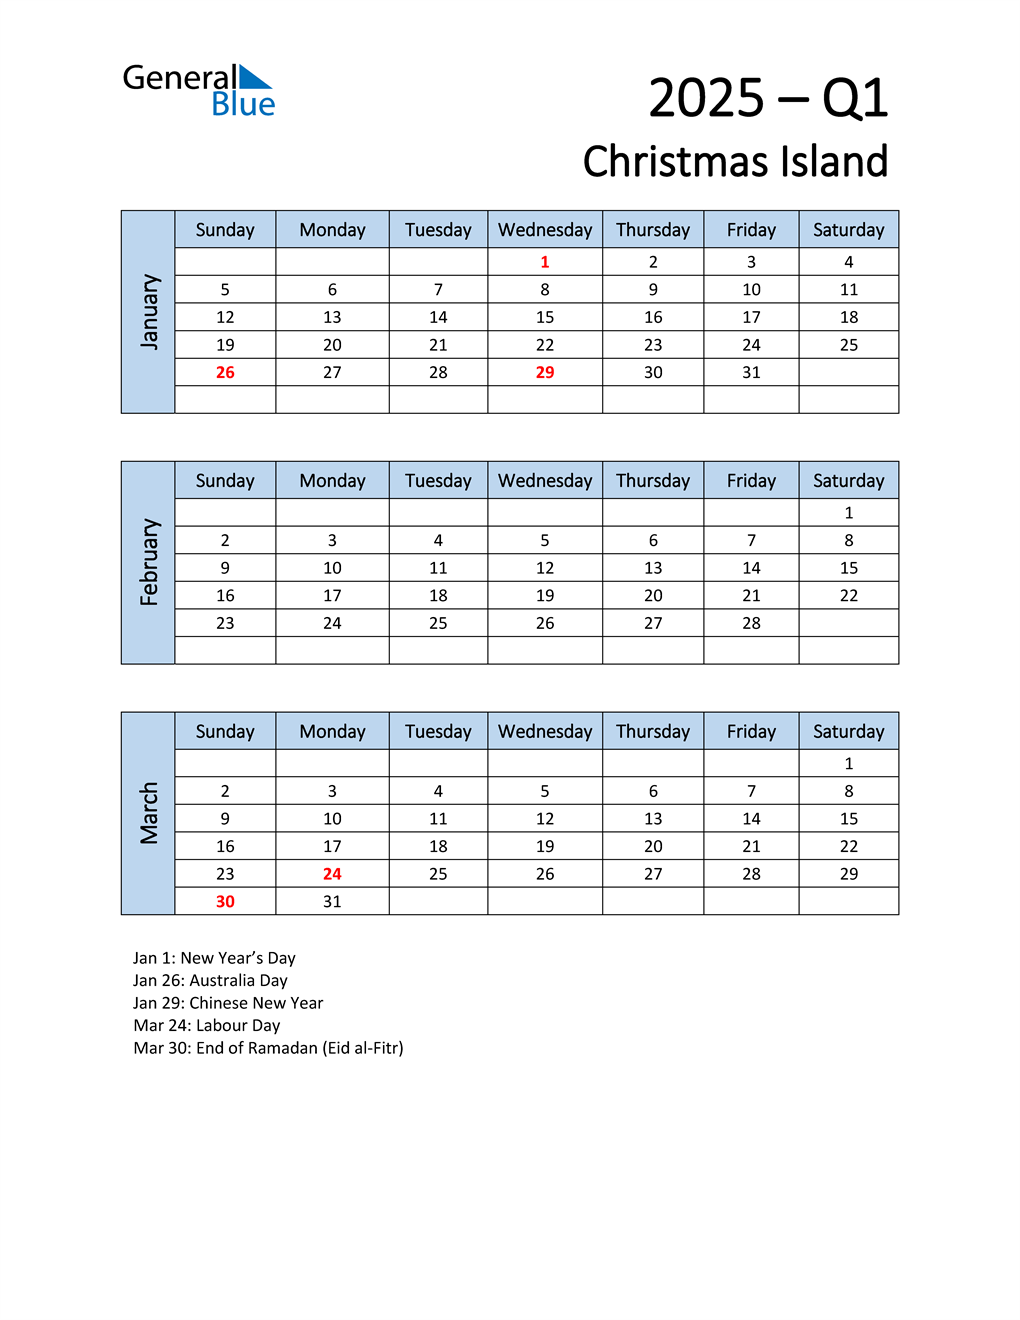  Free Q1 2025 Calendar for Christmas Island